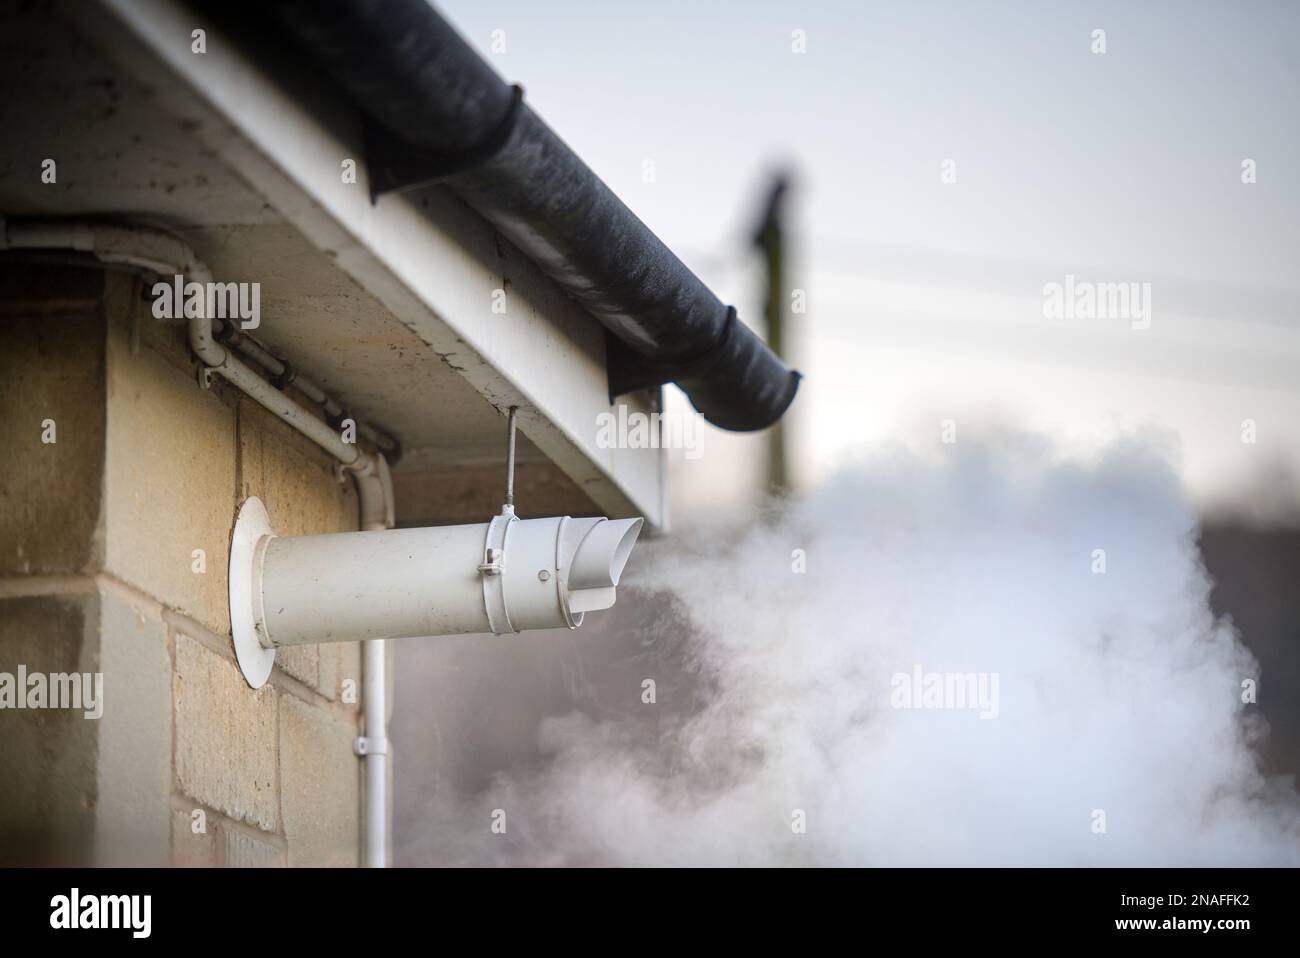 A gas boiler flue vent. Stock Photo